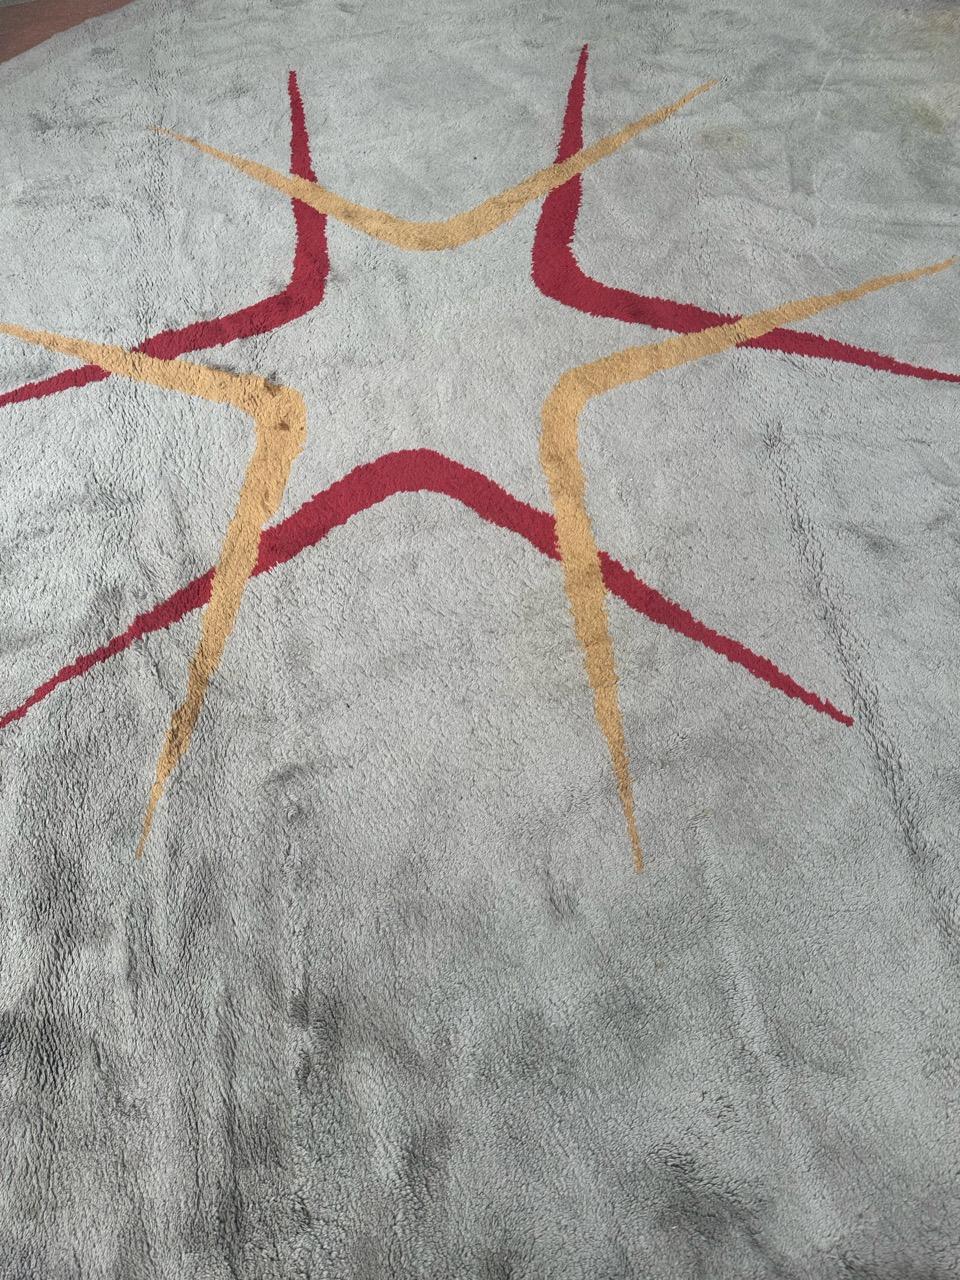 Wunderschöner französischer Teppich aus der Mitte des Jahrhunderts mit Art Deco und modernem Design und schönen Farben mit grauem Feld und rotem und orangefarbenem Muster, komplett handgeknüpft mit Wolle auf Baumwollbasis.

✨✨✨
